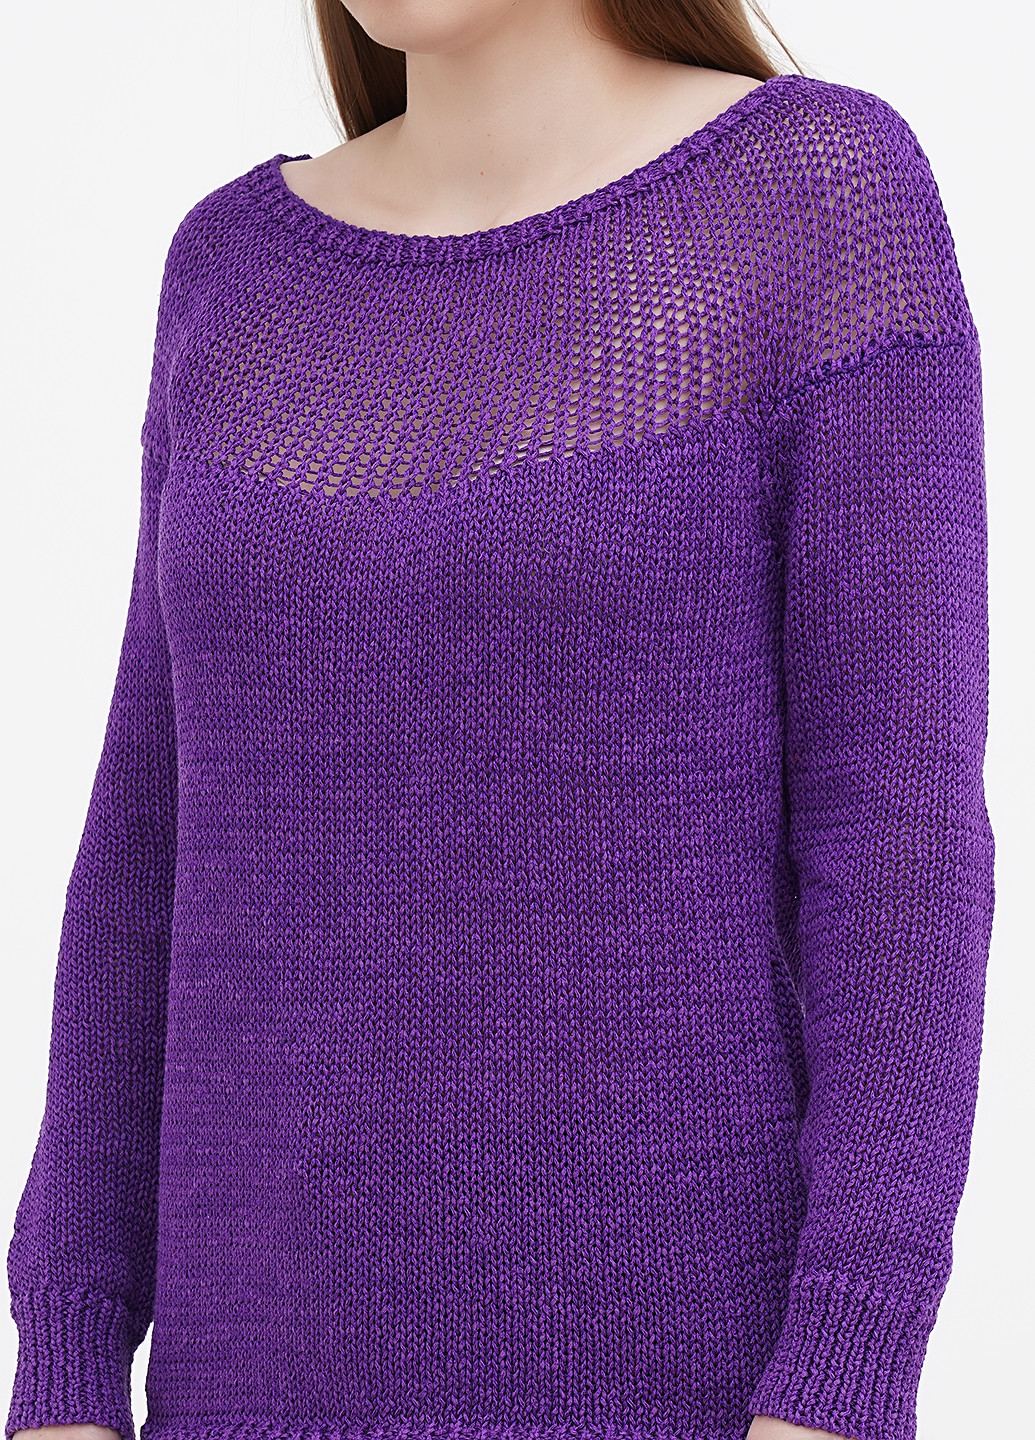 Фиолетовый демисезонный джемпер джемпер Ralph Lauren